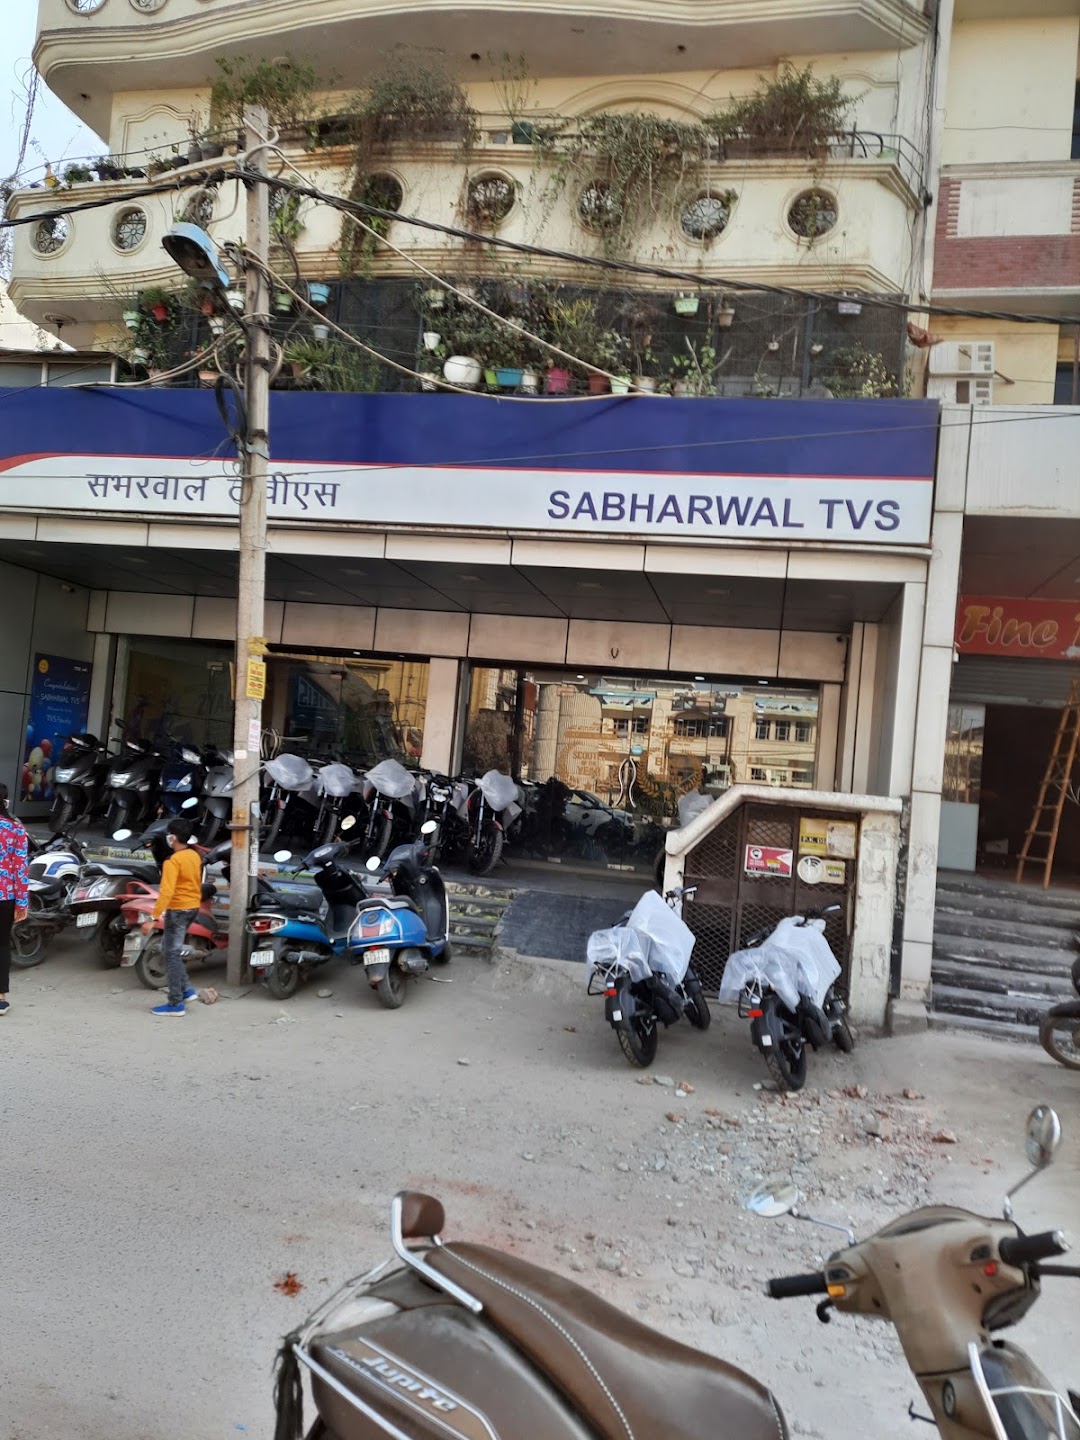 TVS - Sabharwal